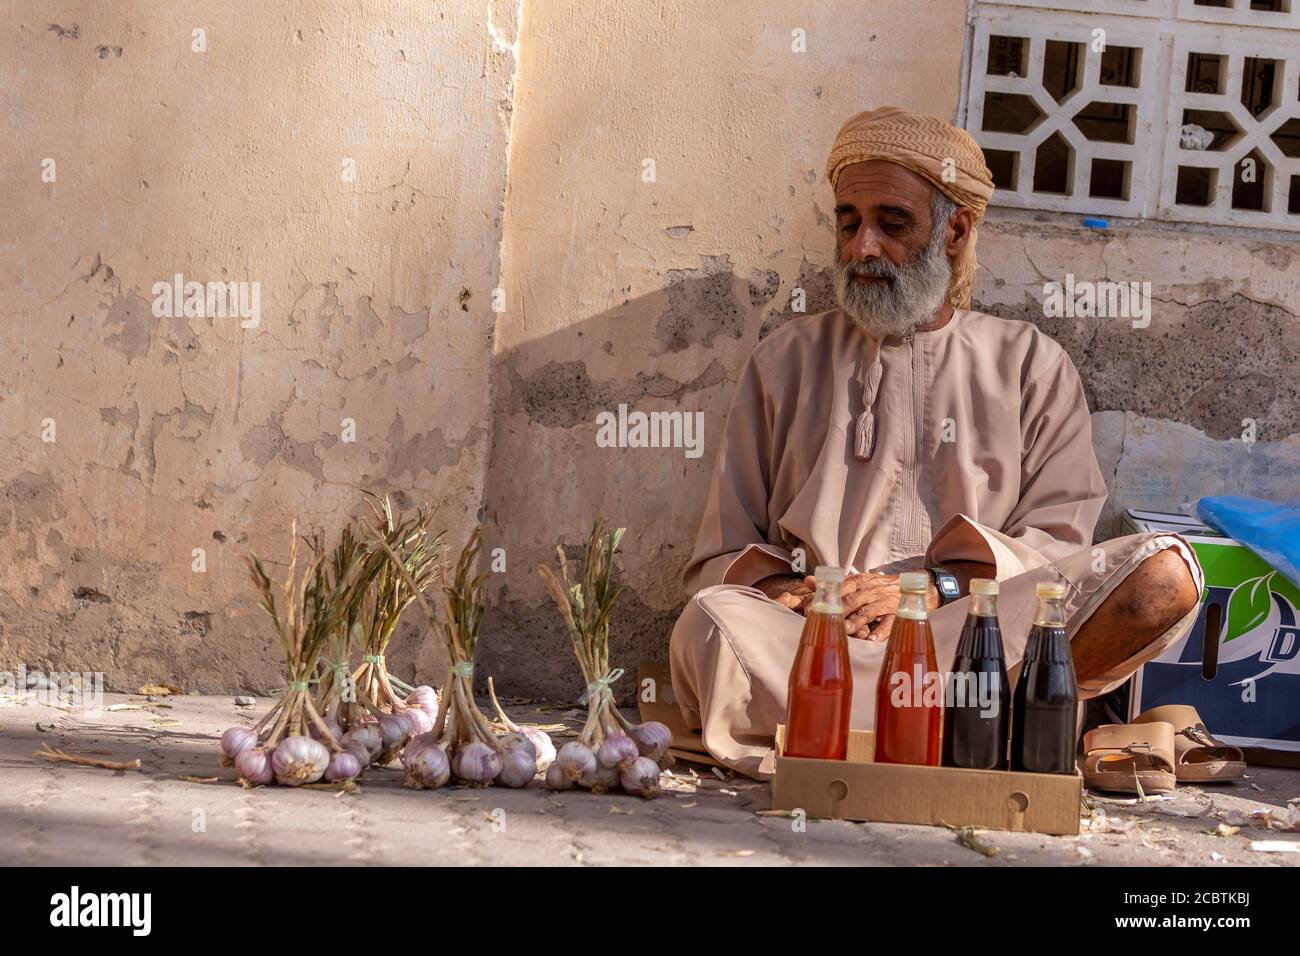 An Omani man selling Honey and garlic at Nizwa souq Stock Photo